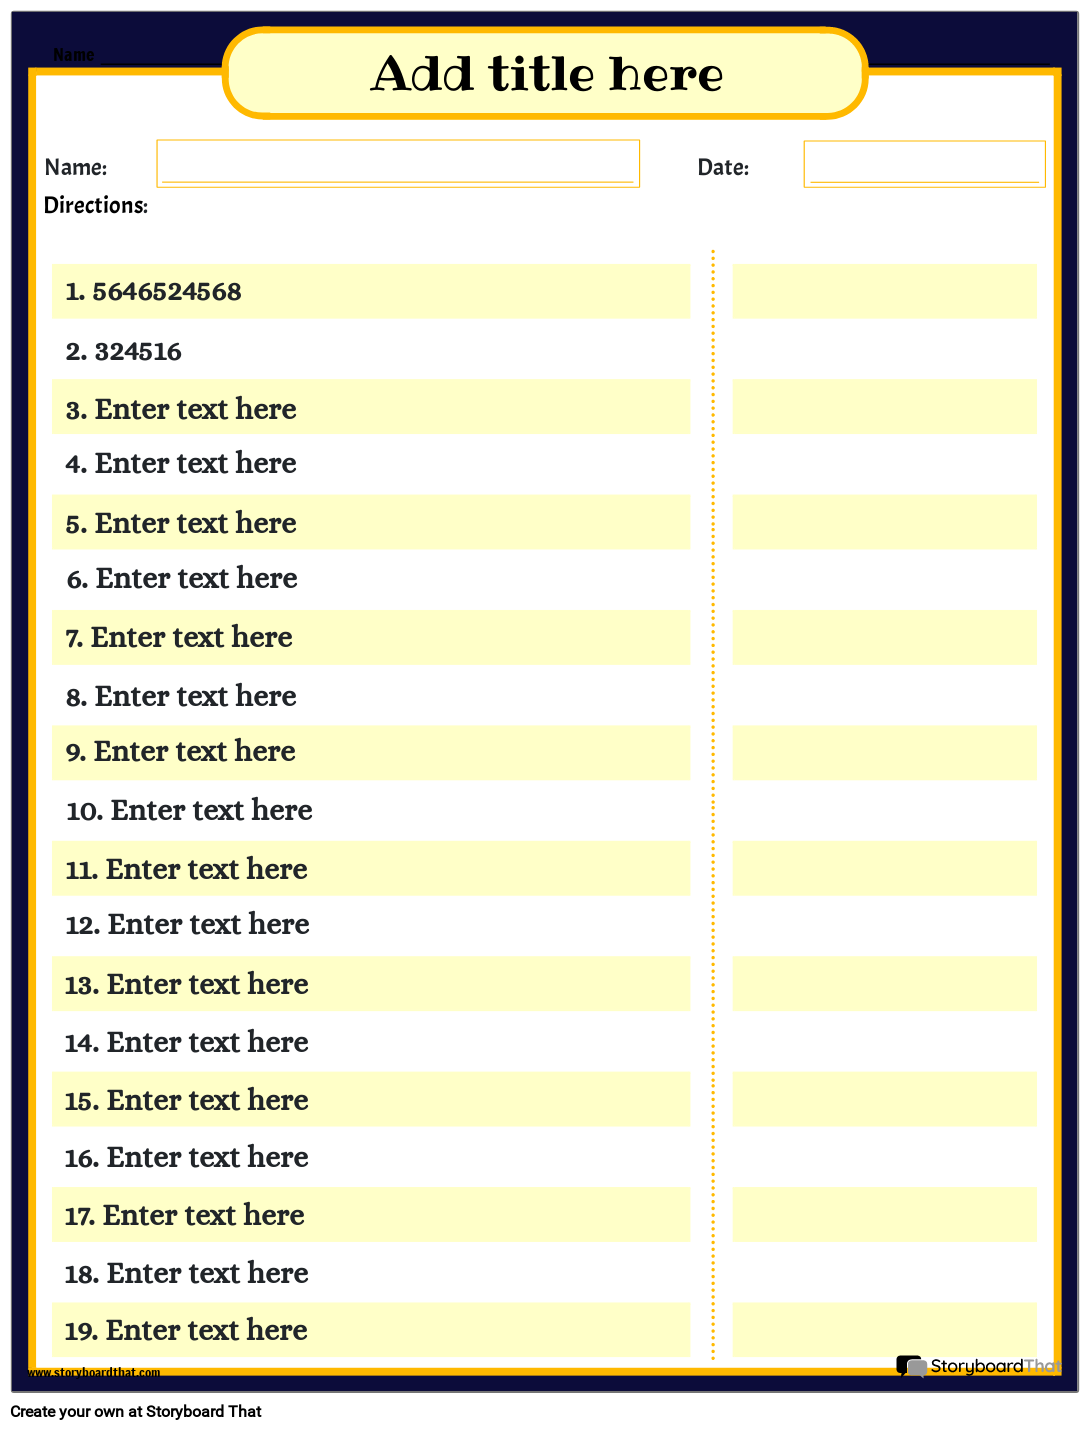 Placing Commas in Number Worksheet